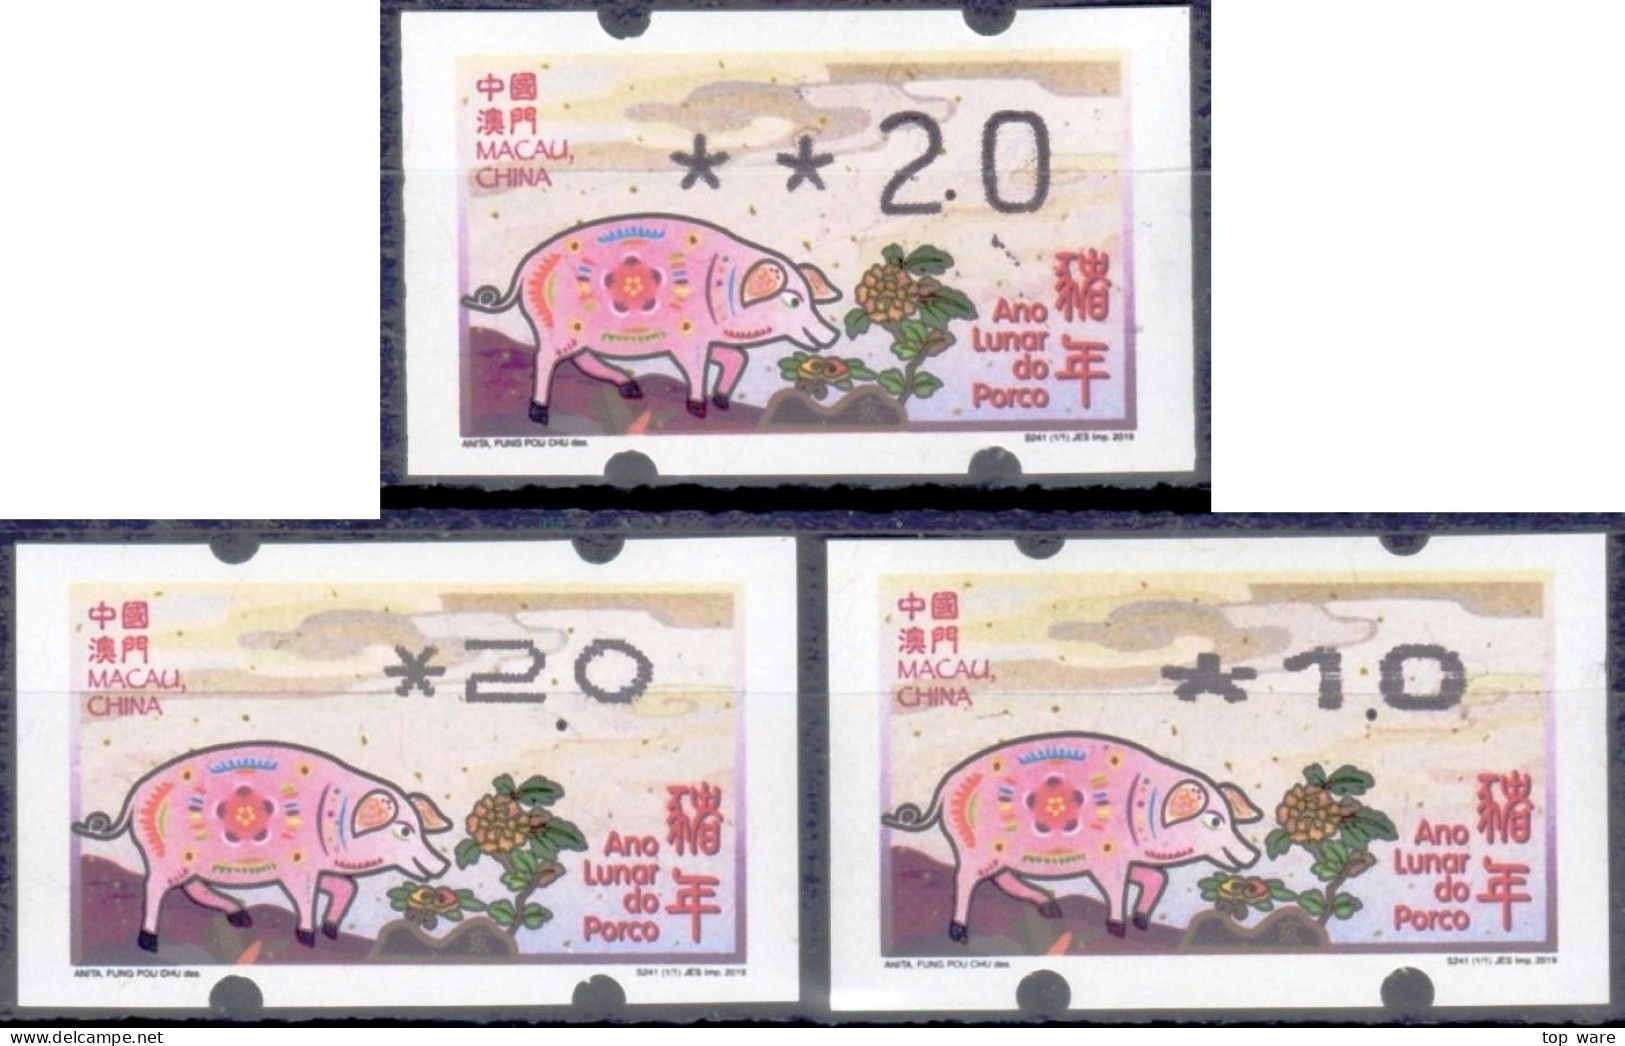 2019 Chine Macau ATM Stamps Année Du Cochon Pig / Tous Types D'imprimantes Klussendorf Nagler Newvision Automatenmarken - Distribuidores